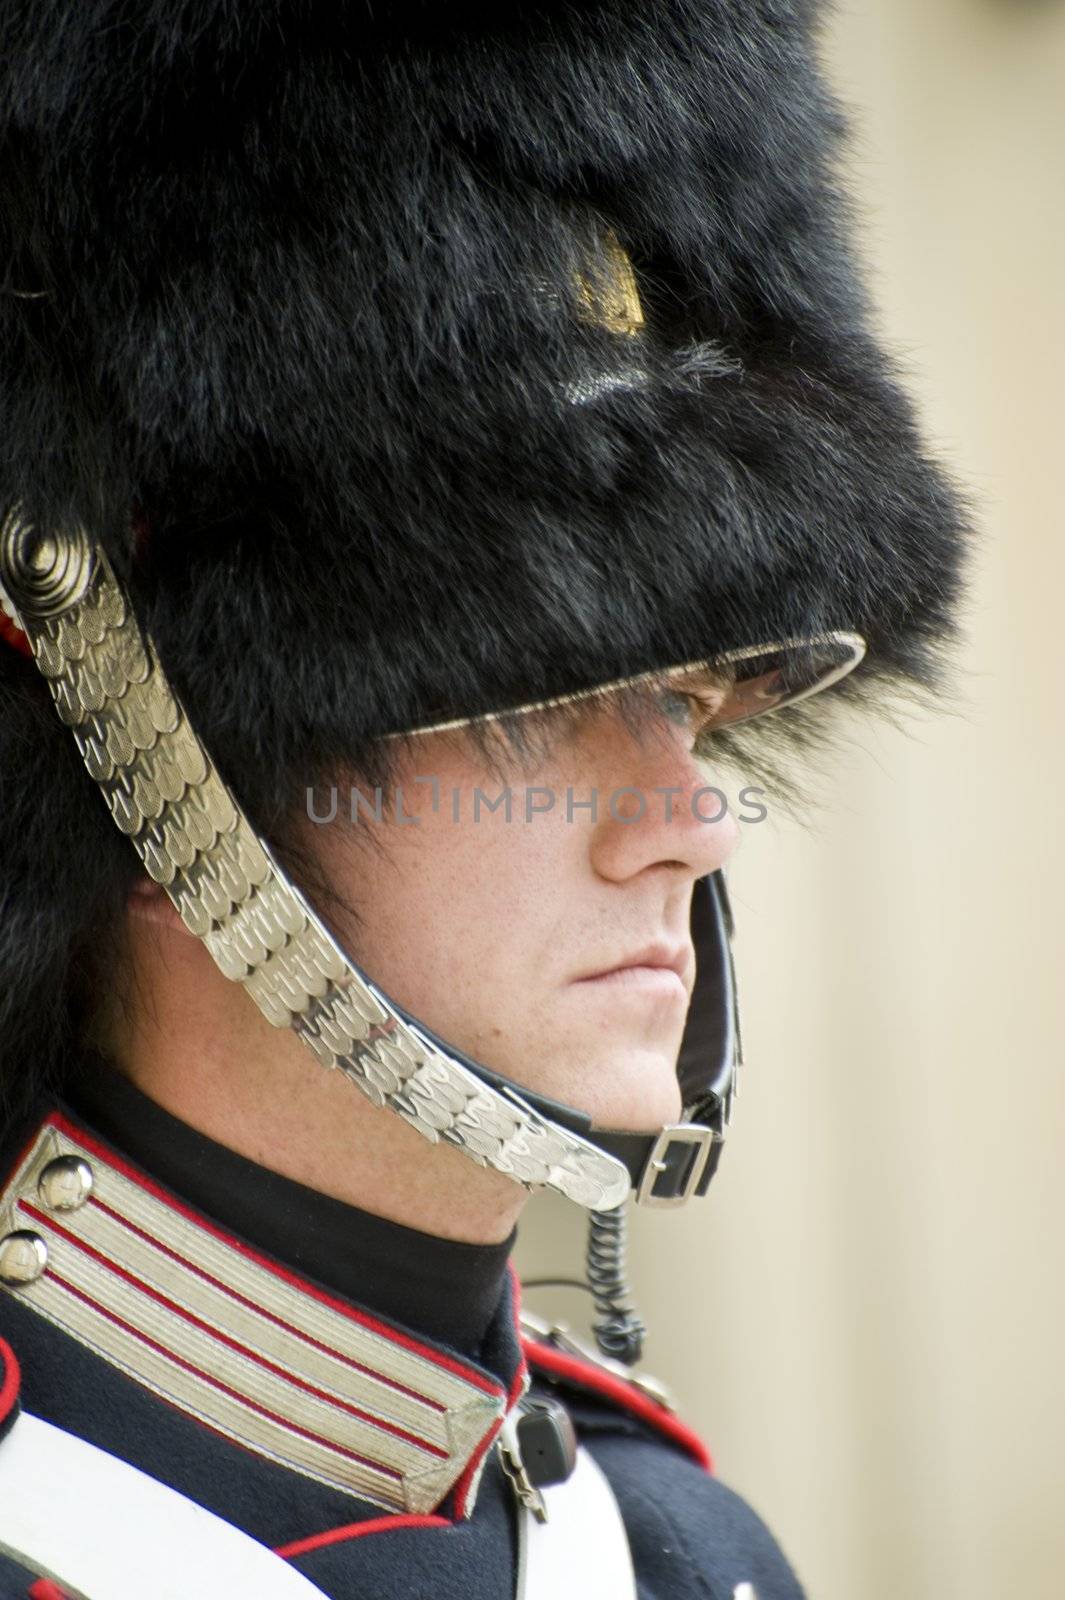 Royal guard by Alenmax